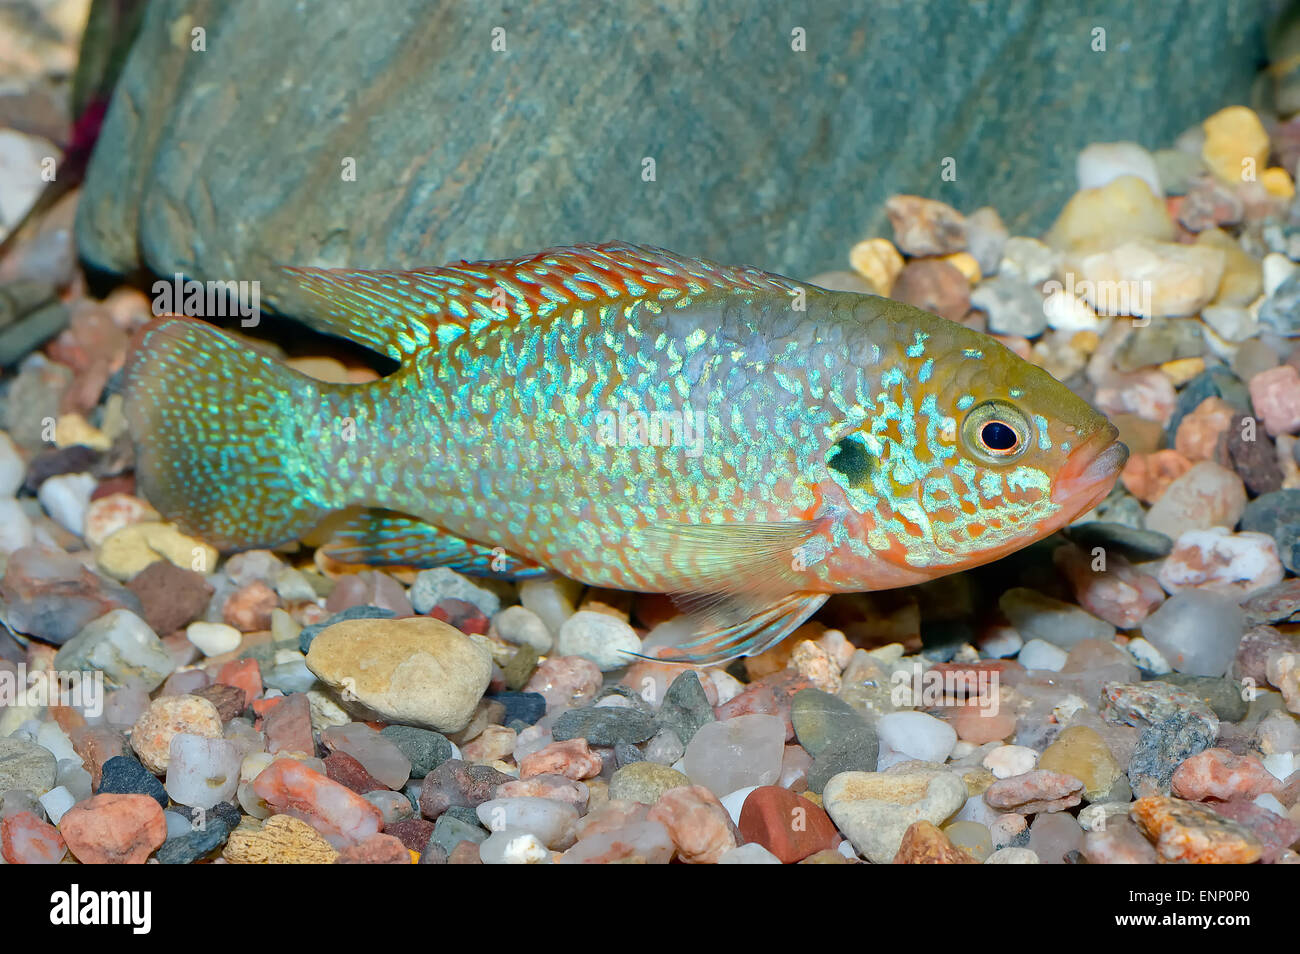 Nice aquarium fish from genus Hemichromis. Stock Photo